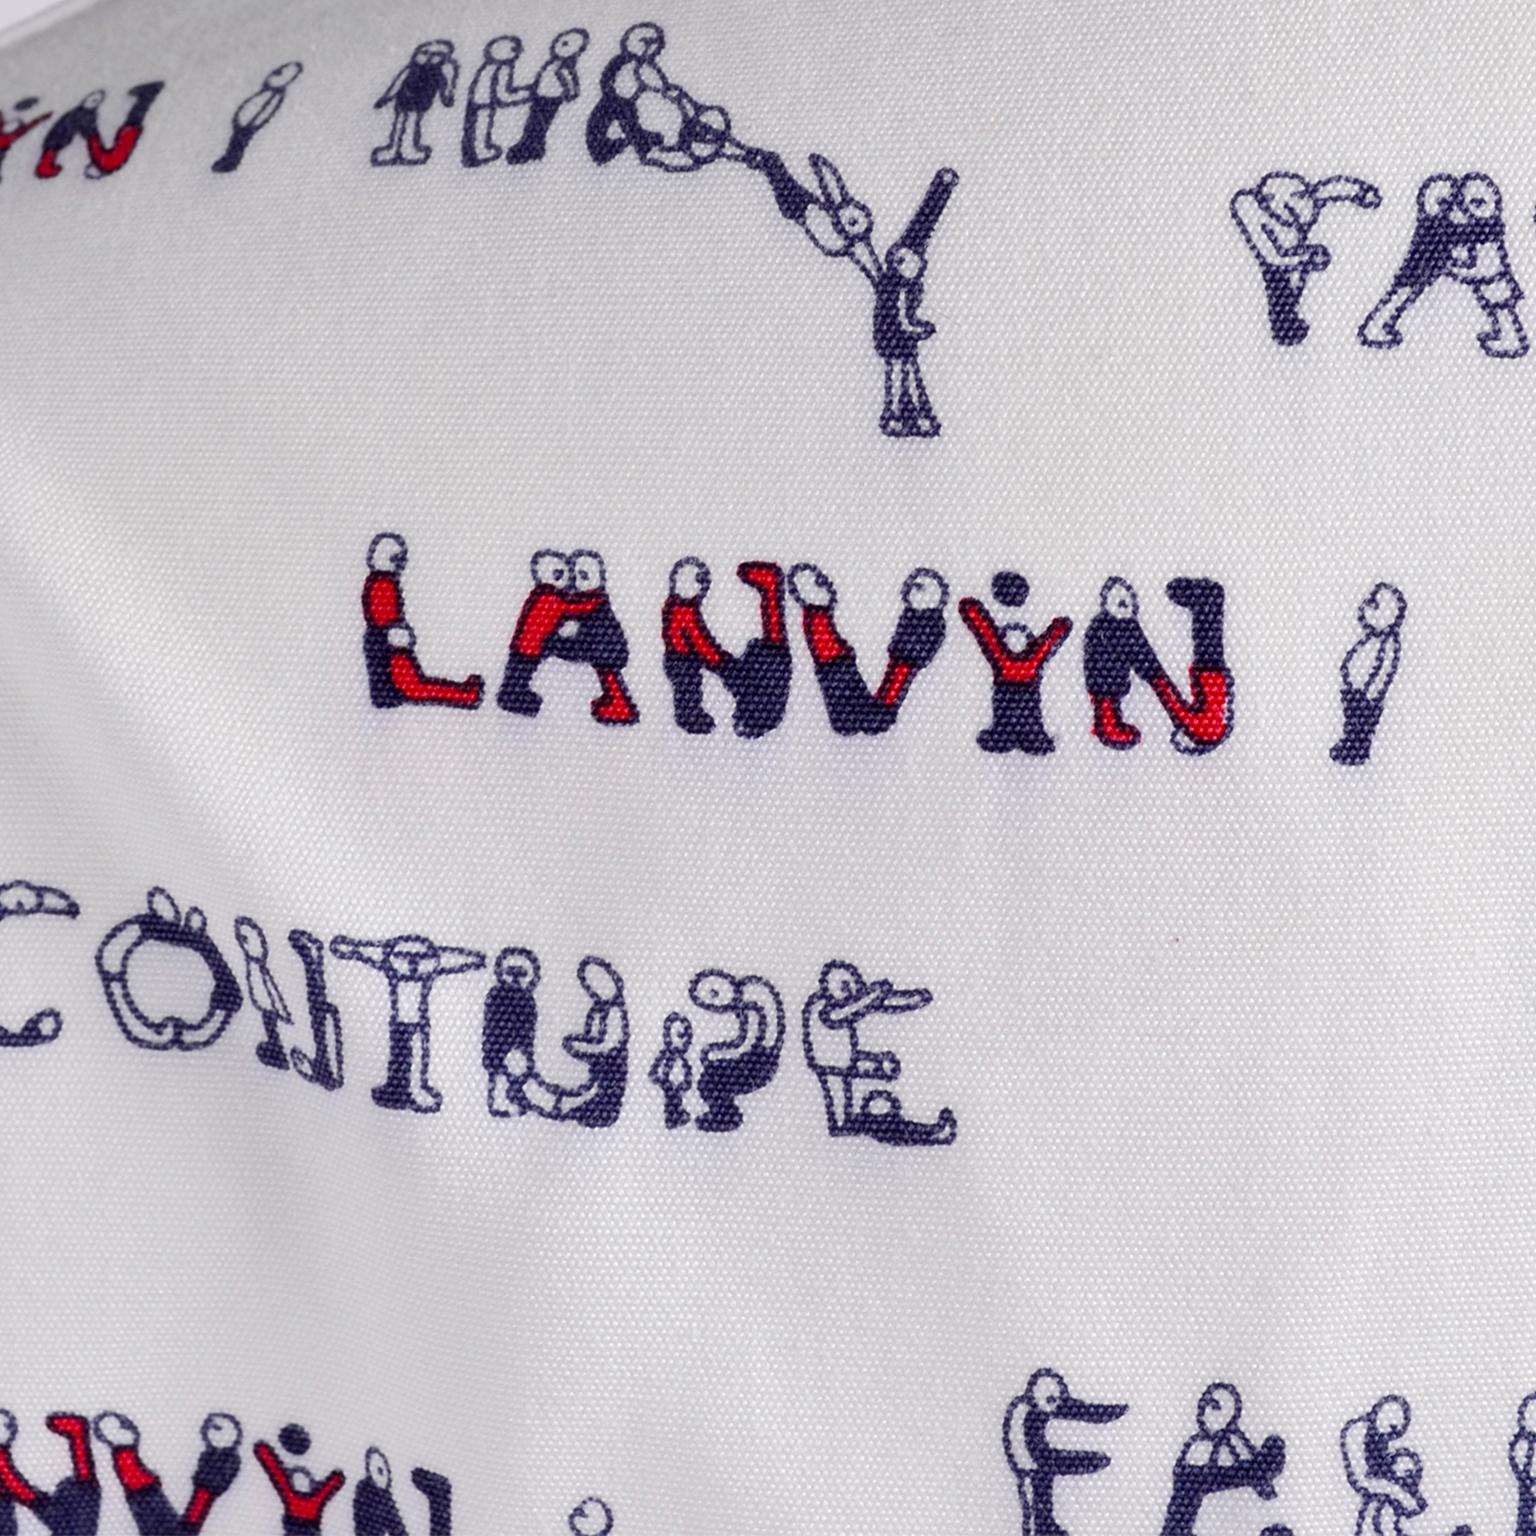 Women's Lanvin Paris Pants & Jacket Vintage Monogram Fashion Acrobat Letters print Suit